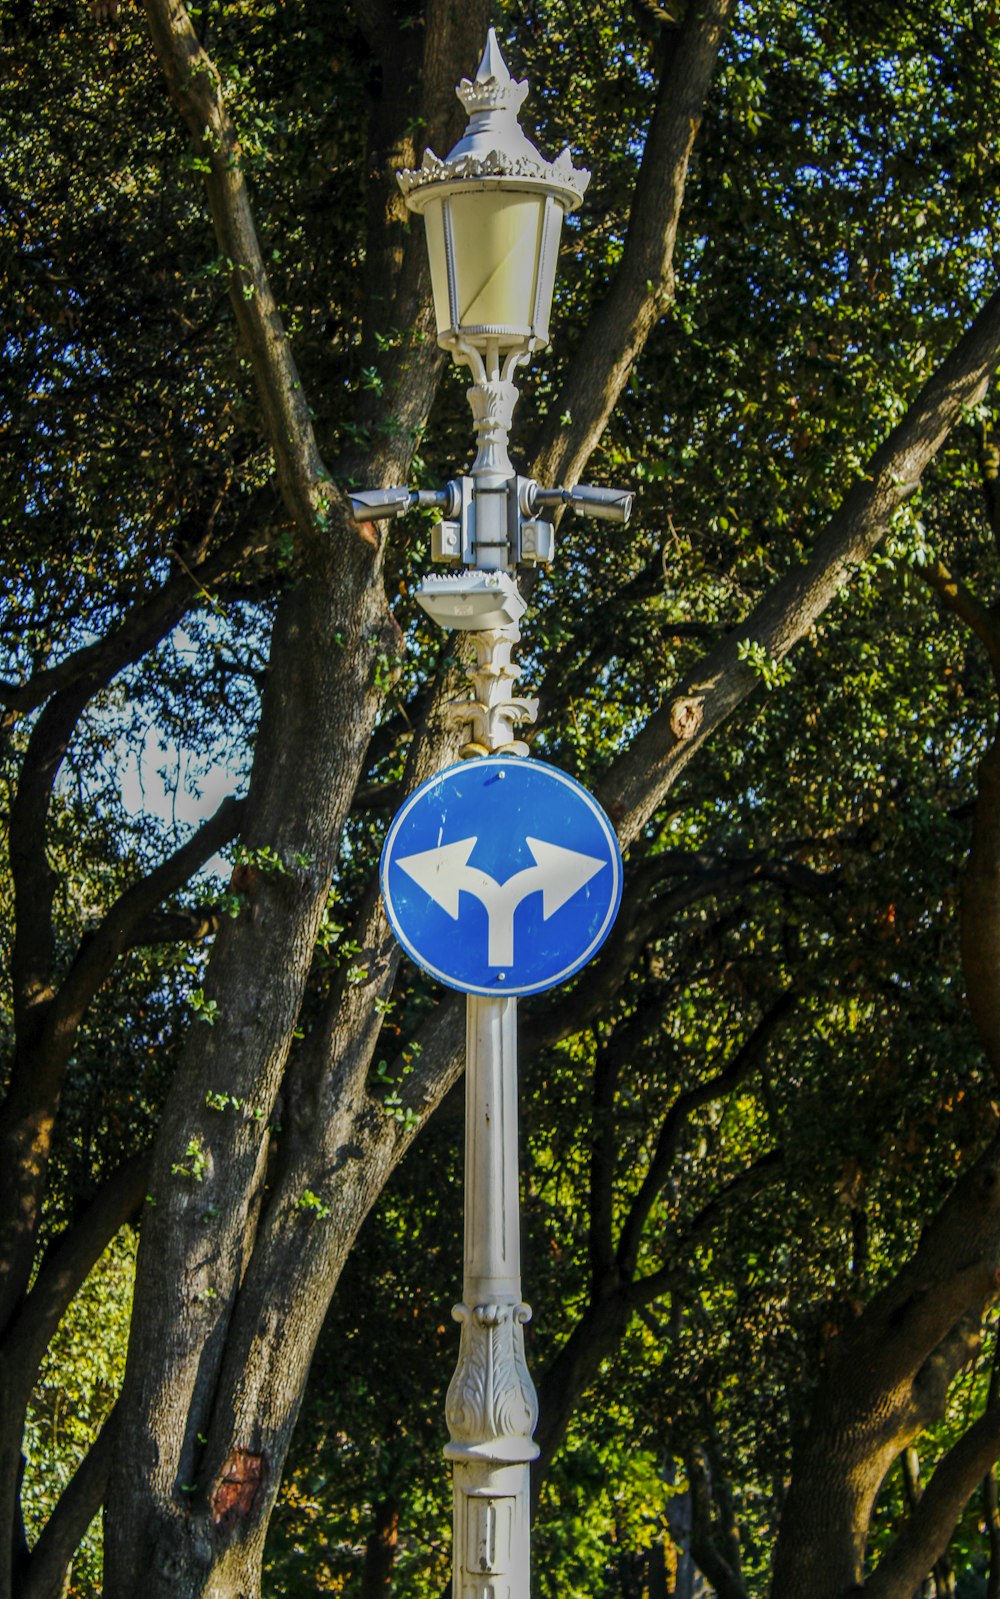 a street sign with a blue arrow